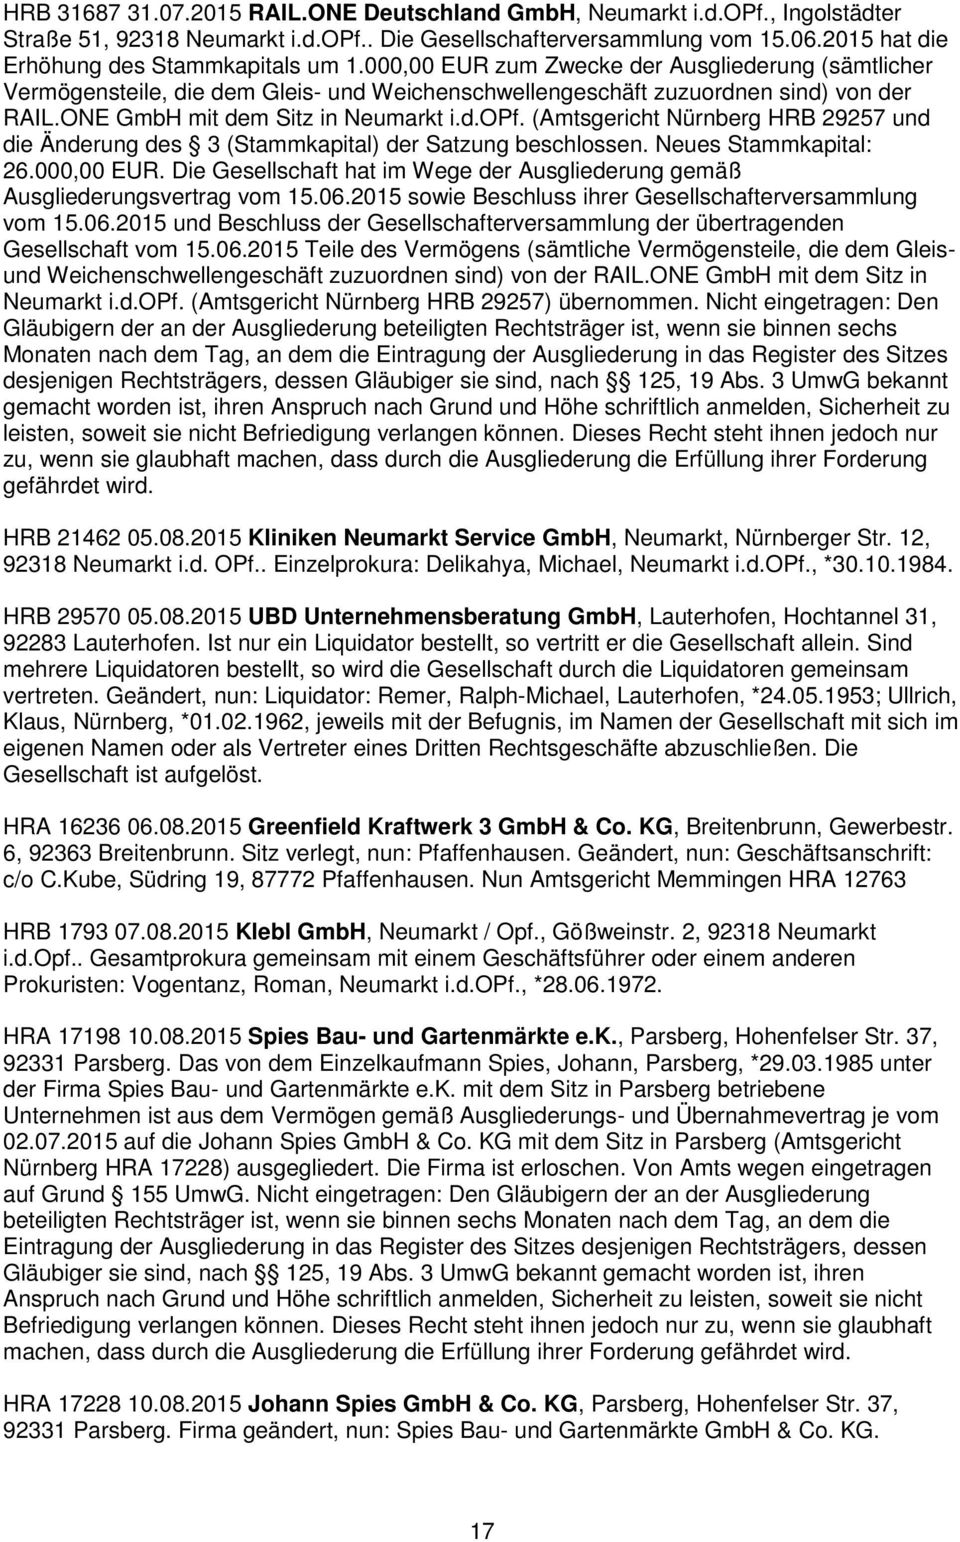 ONE GmbH mit dem Sitz in Neumarkt i.d.opf. (Amtsgericht Nürnberg HRB 29257 und die Änderung des 3 (Stammkapital) der Satzung beschlossen. Neues Stammkapital: 26.000,00 EUR.